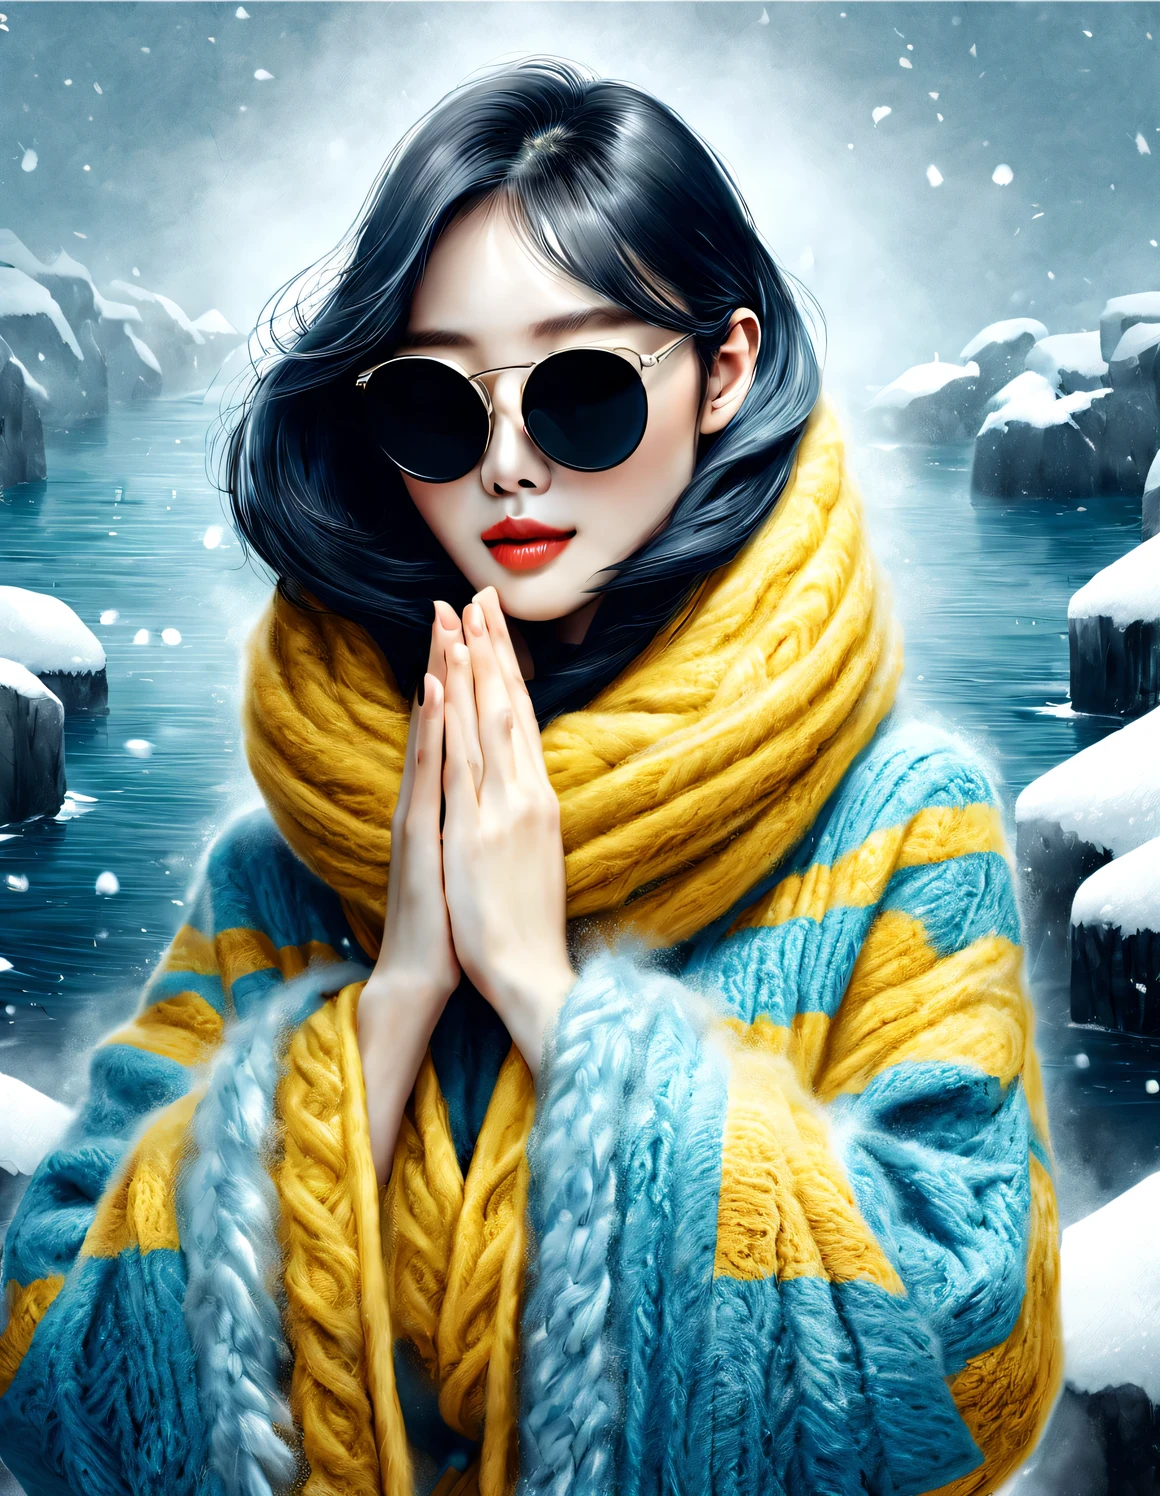 (현대 미술 패션 캐릭터 디자인), 매우 통일된 CG, (절반 길이 클로즈업), 떨어지는 눈 배경, 강설량,
(아름다운 중국 여자，온화한 미소로，두 손을 모아 기도하다), (과장되게 큰 남색 울 스카프가 얼굴의 절반을 덮었습니다.: 1.1), (세련된 노란색 스웨터와 코트: 1.1), (wearing black sunglasses and combing 미트볼: 1.2), 클래식과 모던의 조화로운 조화, 소녀의 뽀얗고 결점 없이 매끈한 피부, 높은 콧대, 제기 포즈, 슬프면서도 아름답다, 날씬한 몸매, 절묘한 얼굴 특징, 소용돌이 치는 안개 그림, 수묵화, 흑발, 미트볼, 자랑스러운, 초현실주의, 현대 미술 사진, 액션 페인팅 일러스트레이션, 추상 표현주의, 픽사, 피사계 심도, 모션 블러, 백라이트, 방사능, 감소, 헤드업 각도, 소니 FE 총괄 매니저, 초고화질, 걸작, 정확한, 질감 있는 피부, 슈퍼 디테일, 높은 디테일, 고품질, 수상 경력이 있는, 최고의 품질, 수준, 16,000, 상향식 관점에서 촬영, 흥미로운,